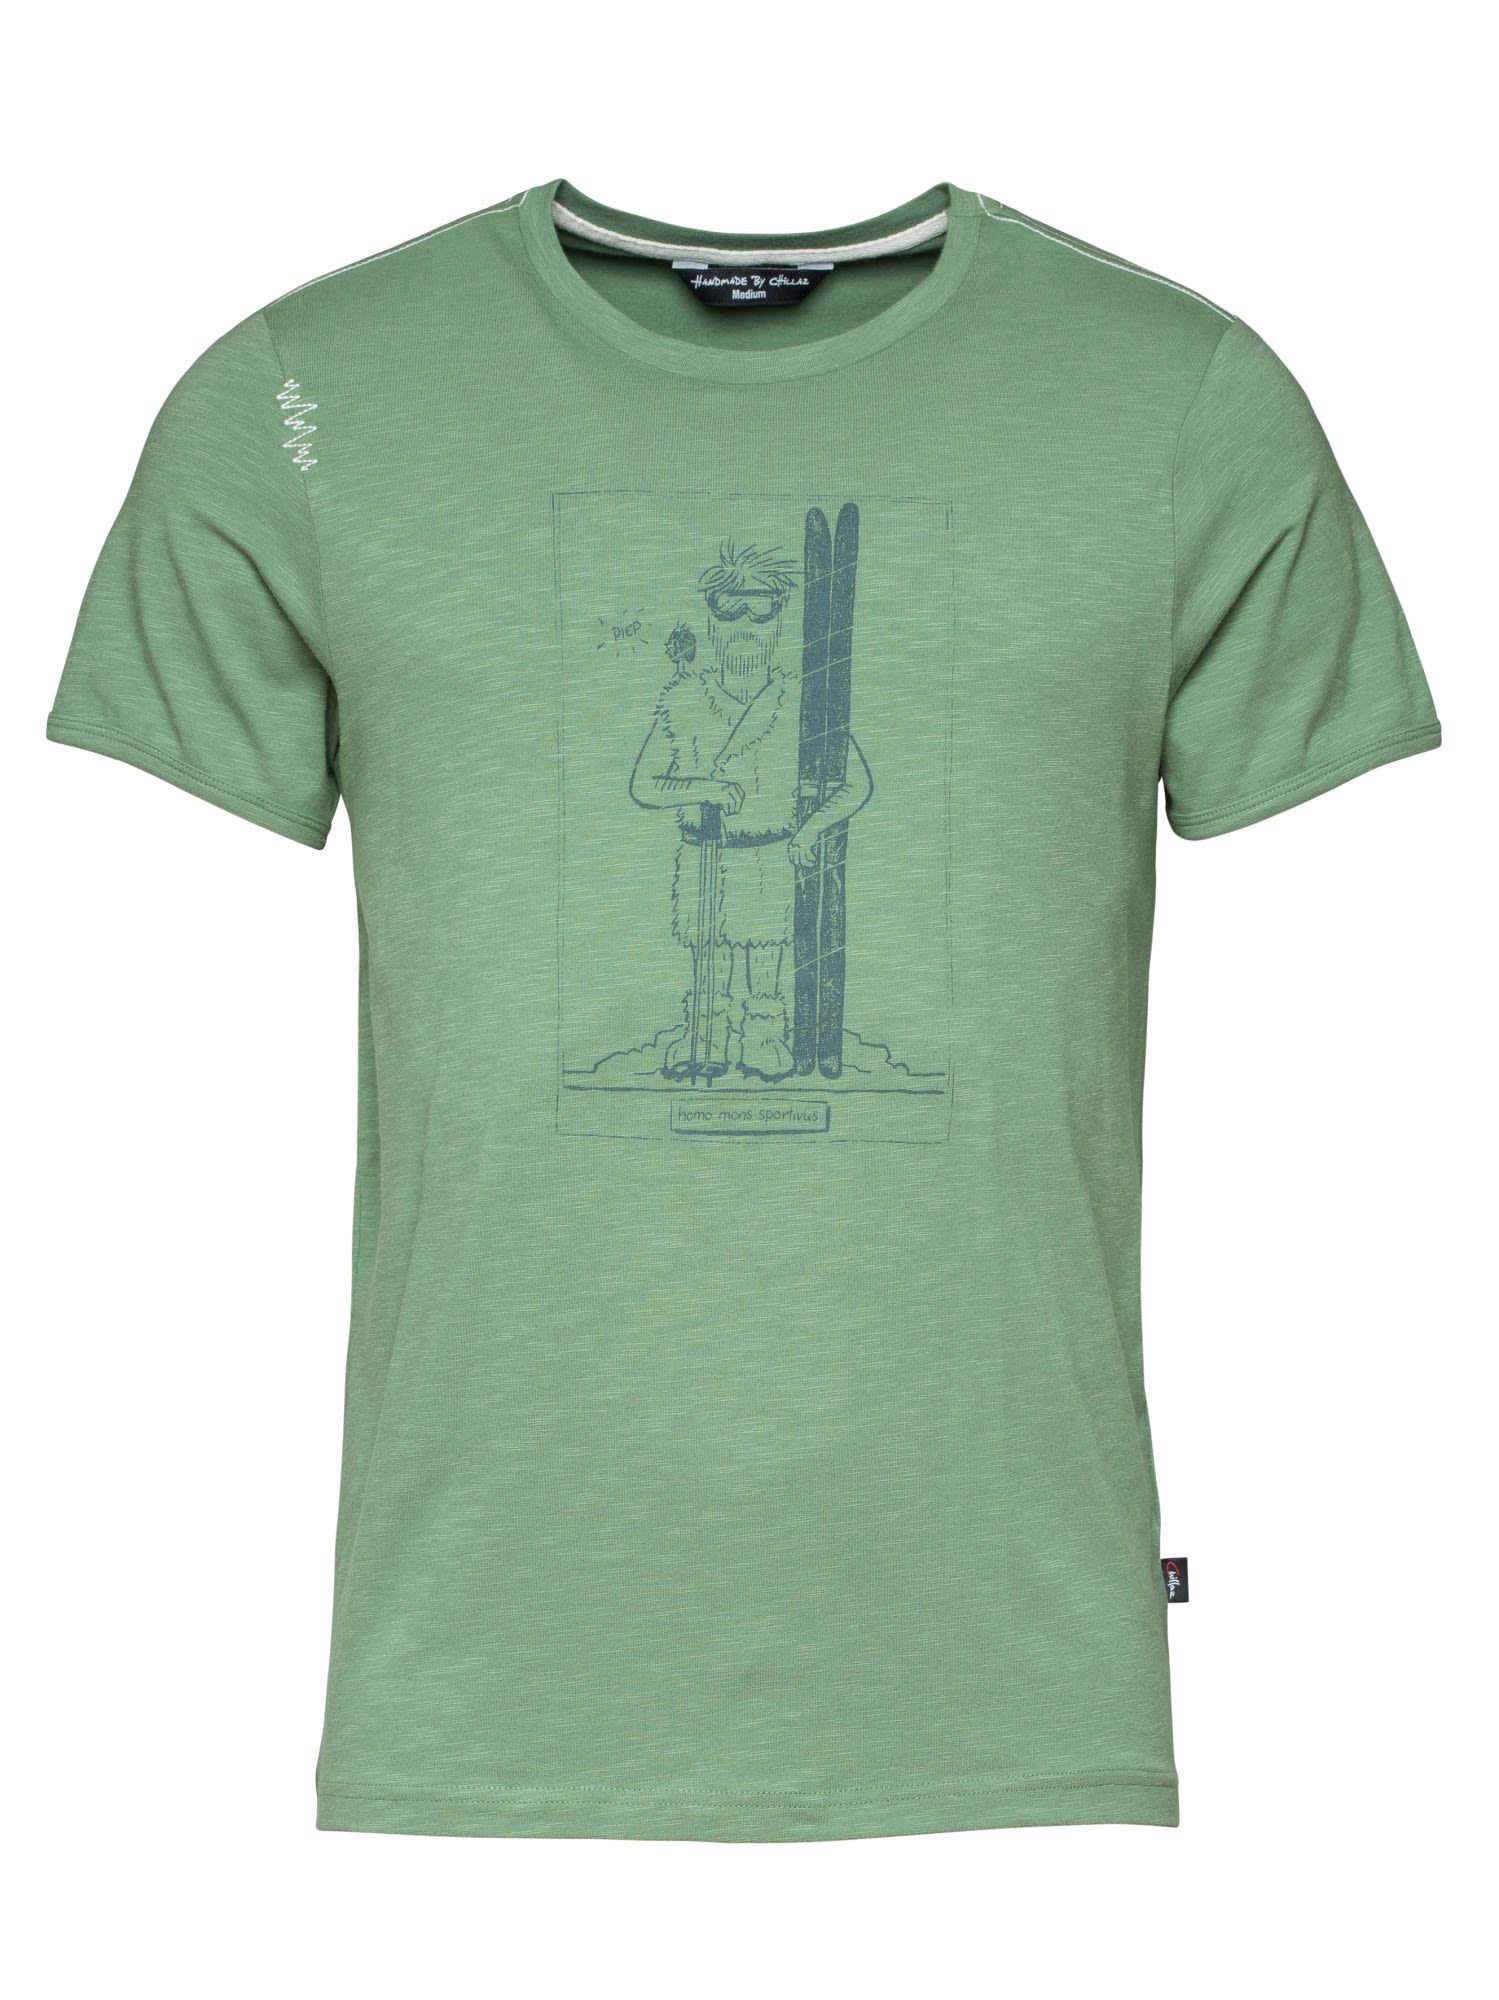 Chillaz T-Shirt Chillaz M Homo Mons Sportivus T-shirt Herren Green